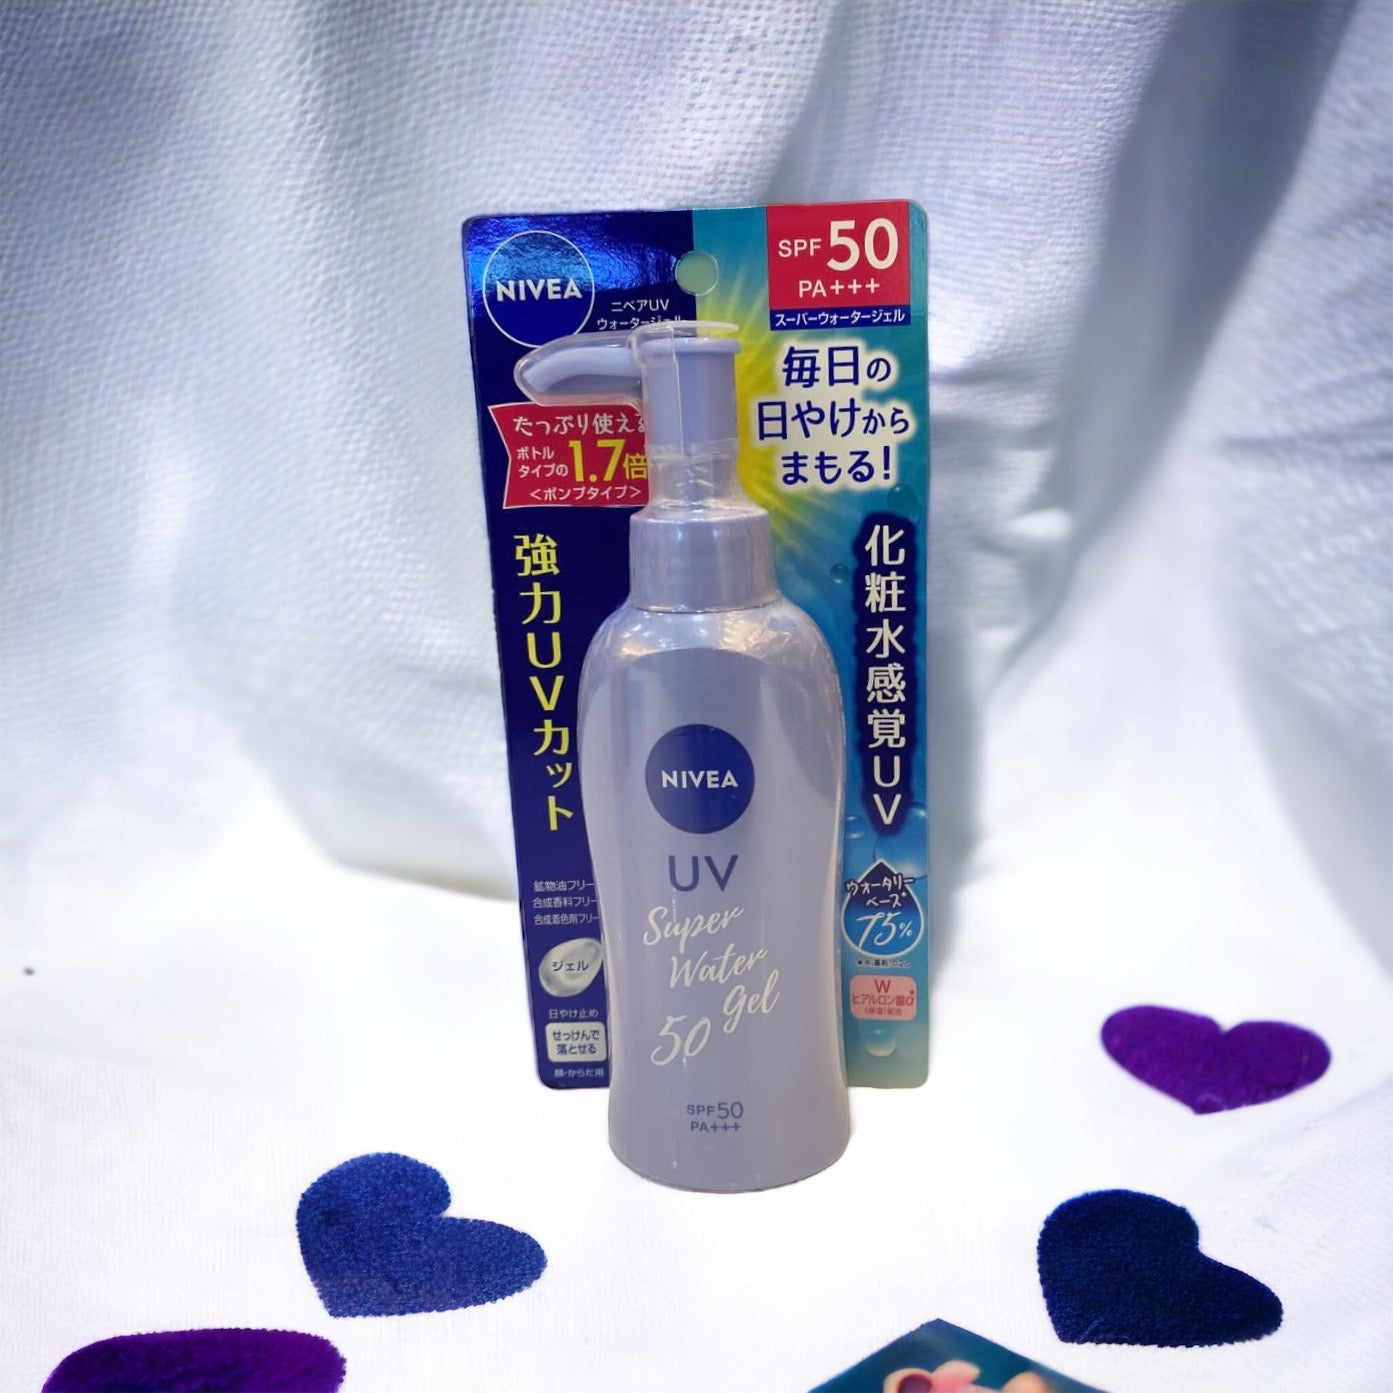 Nivea UV Super Water Gel SPF50